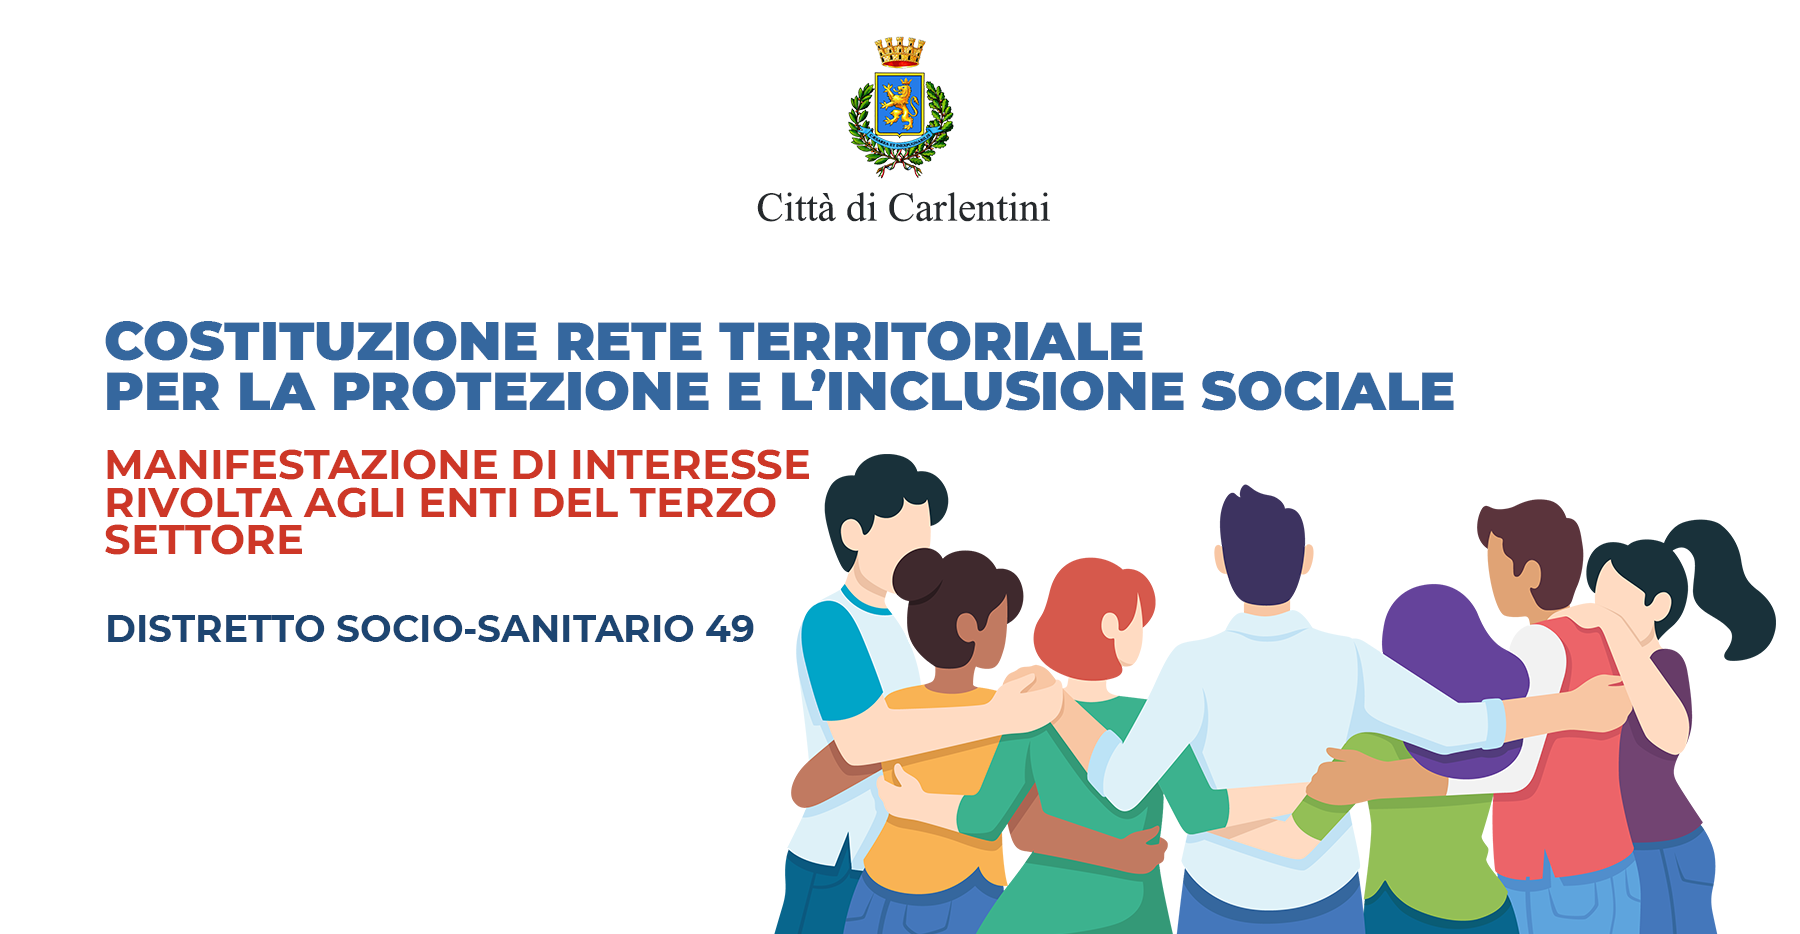 Rete territoriale per la protezione e l’inclusione sociale: avviso di manifestazione di interesse per enti terzo settore